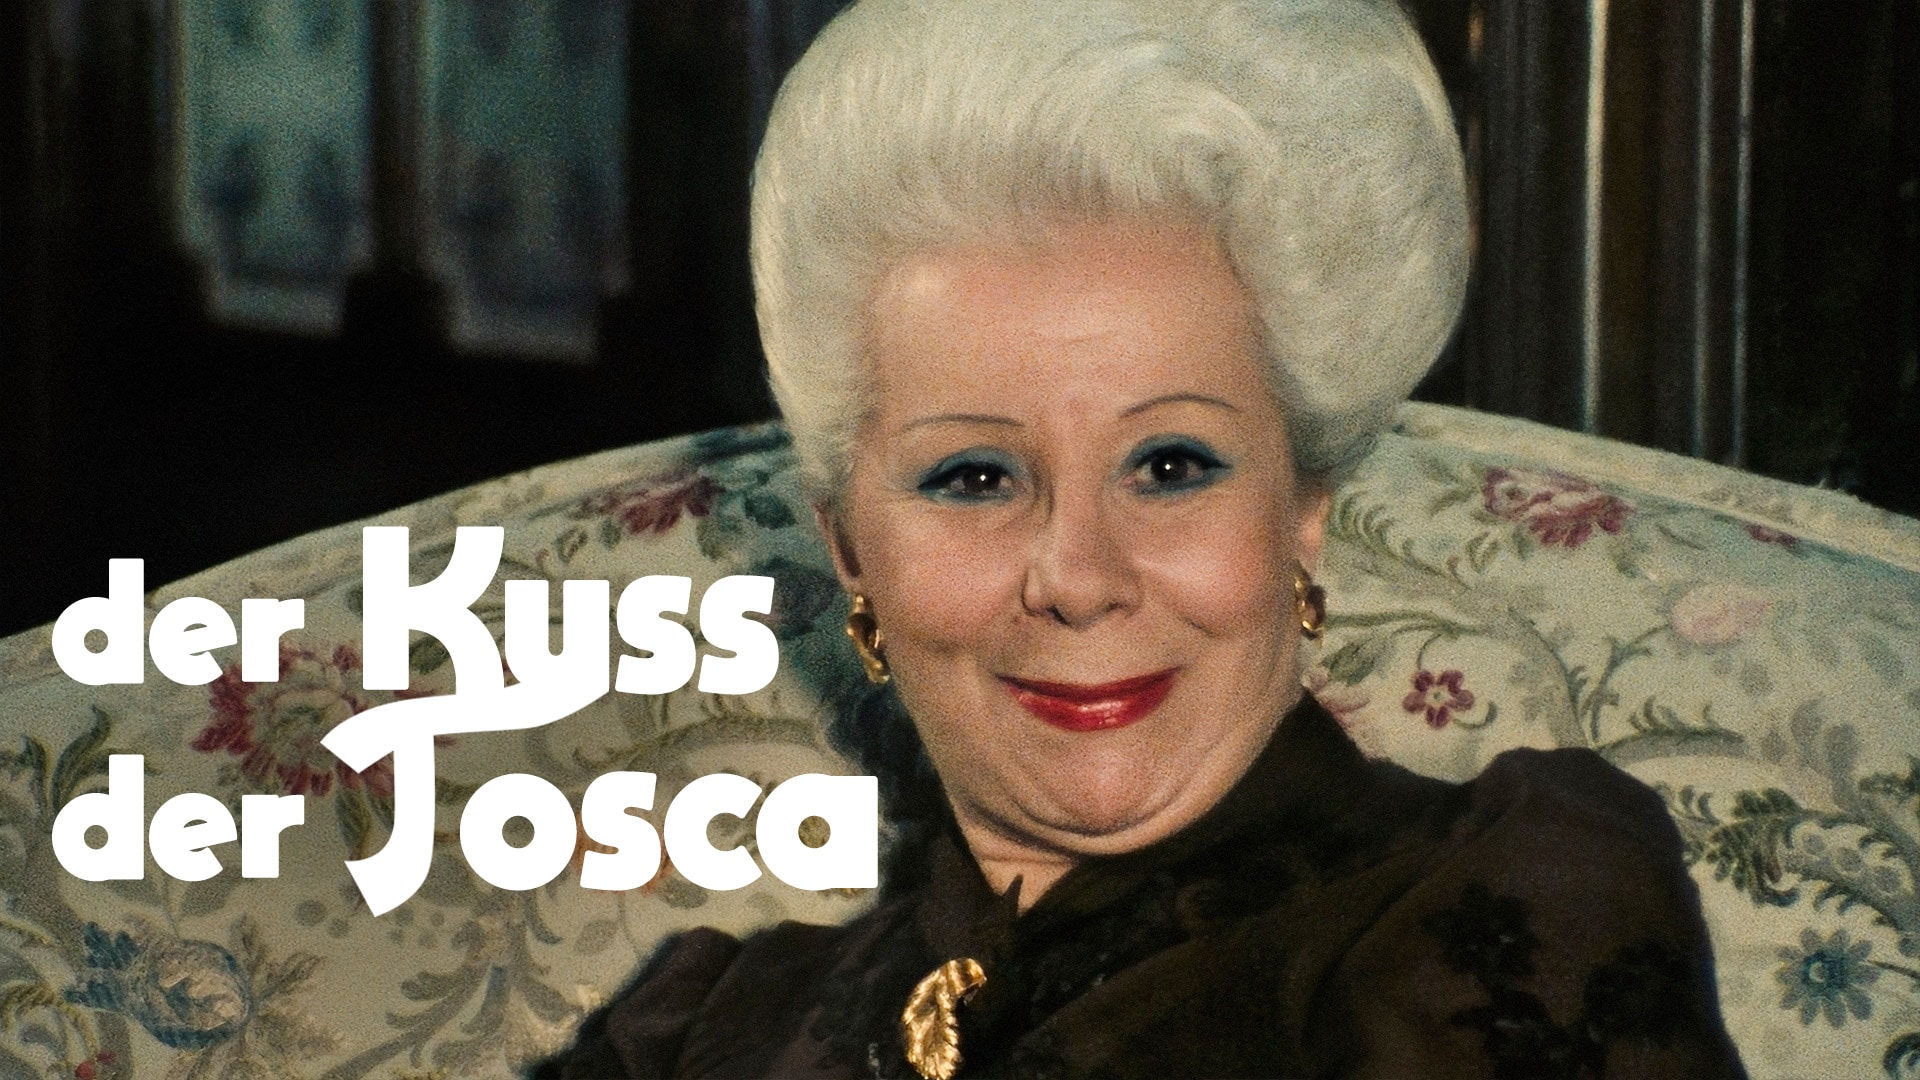 Der Kuss der Tosca